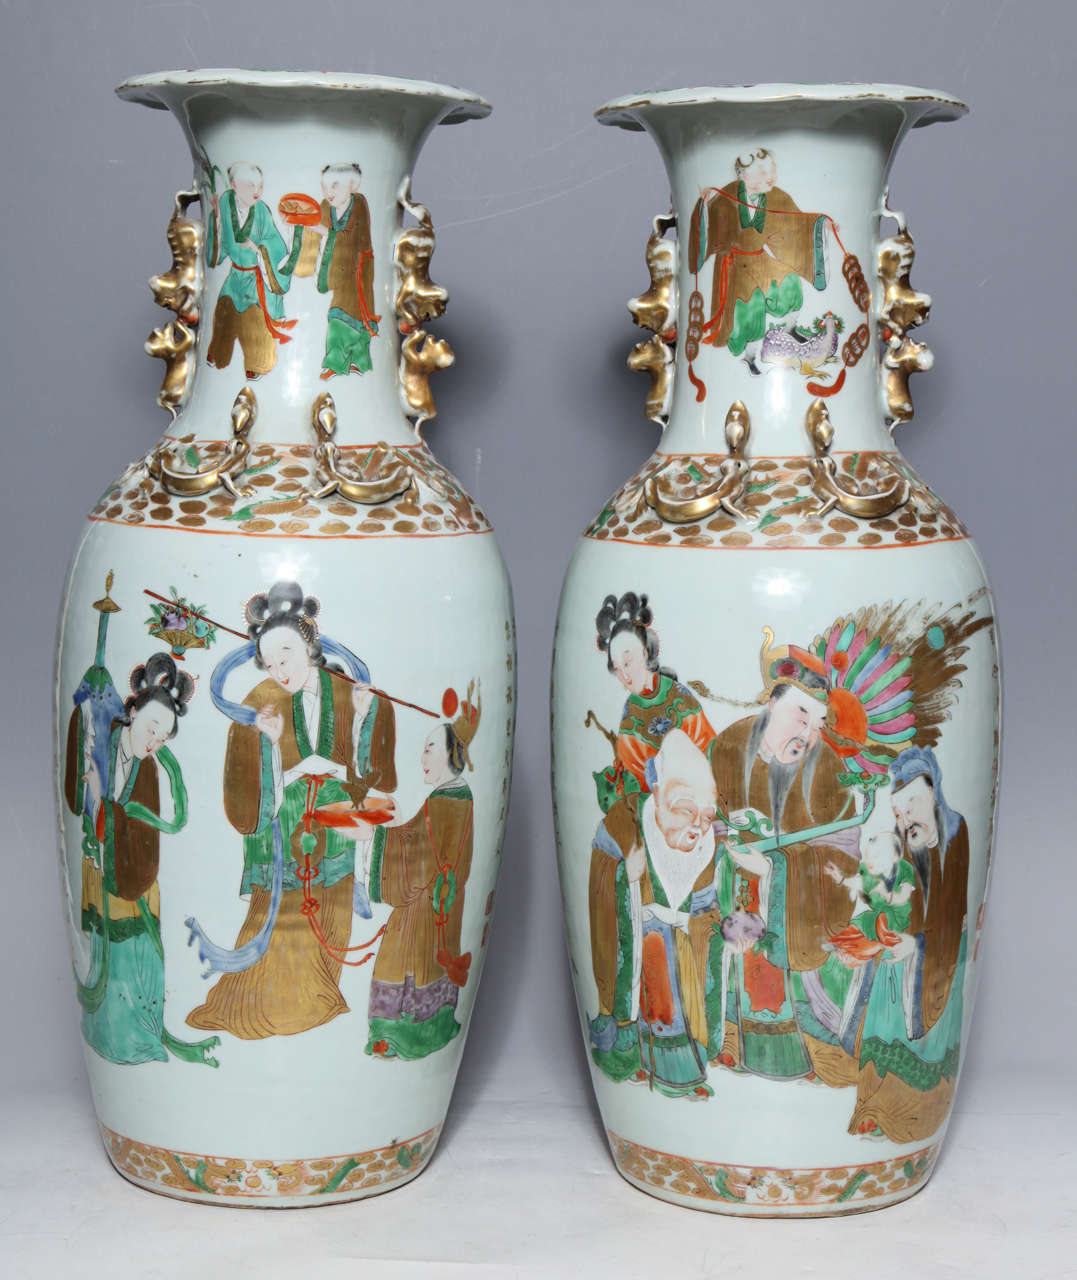 Paire de vases en porcelaine chinoise avec des figures peintes et des poèmes chinois en or. Le poème doré encadre les deux groupes de personnages qui servent probablement de complément narratif à la calligraphie. Ces personnages aux détails exquis